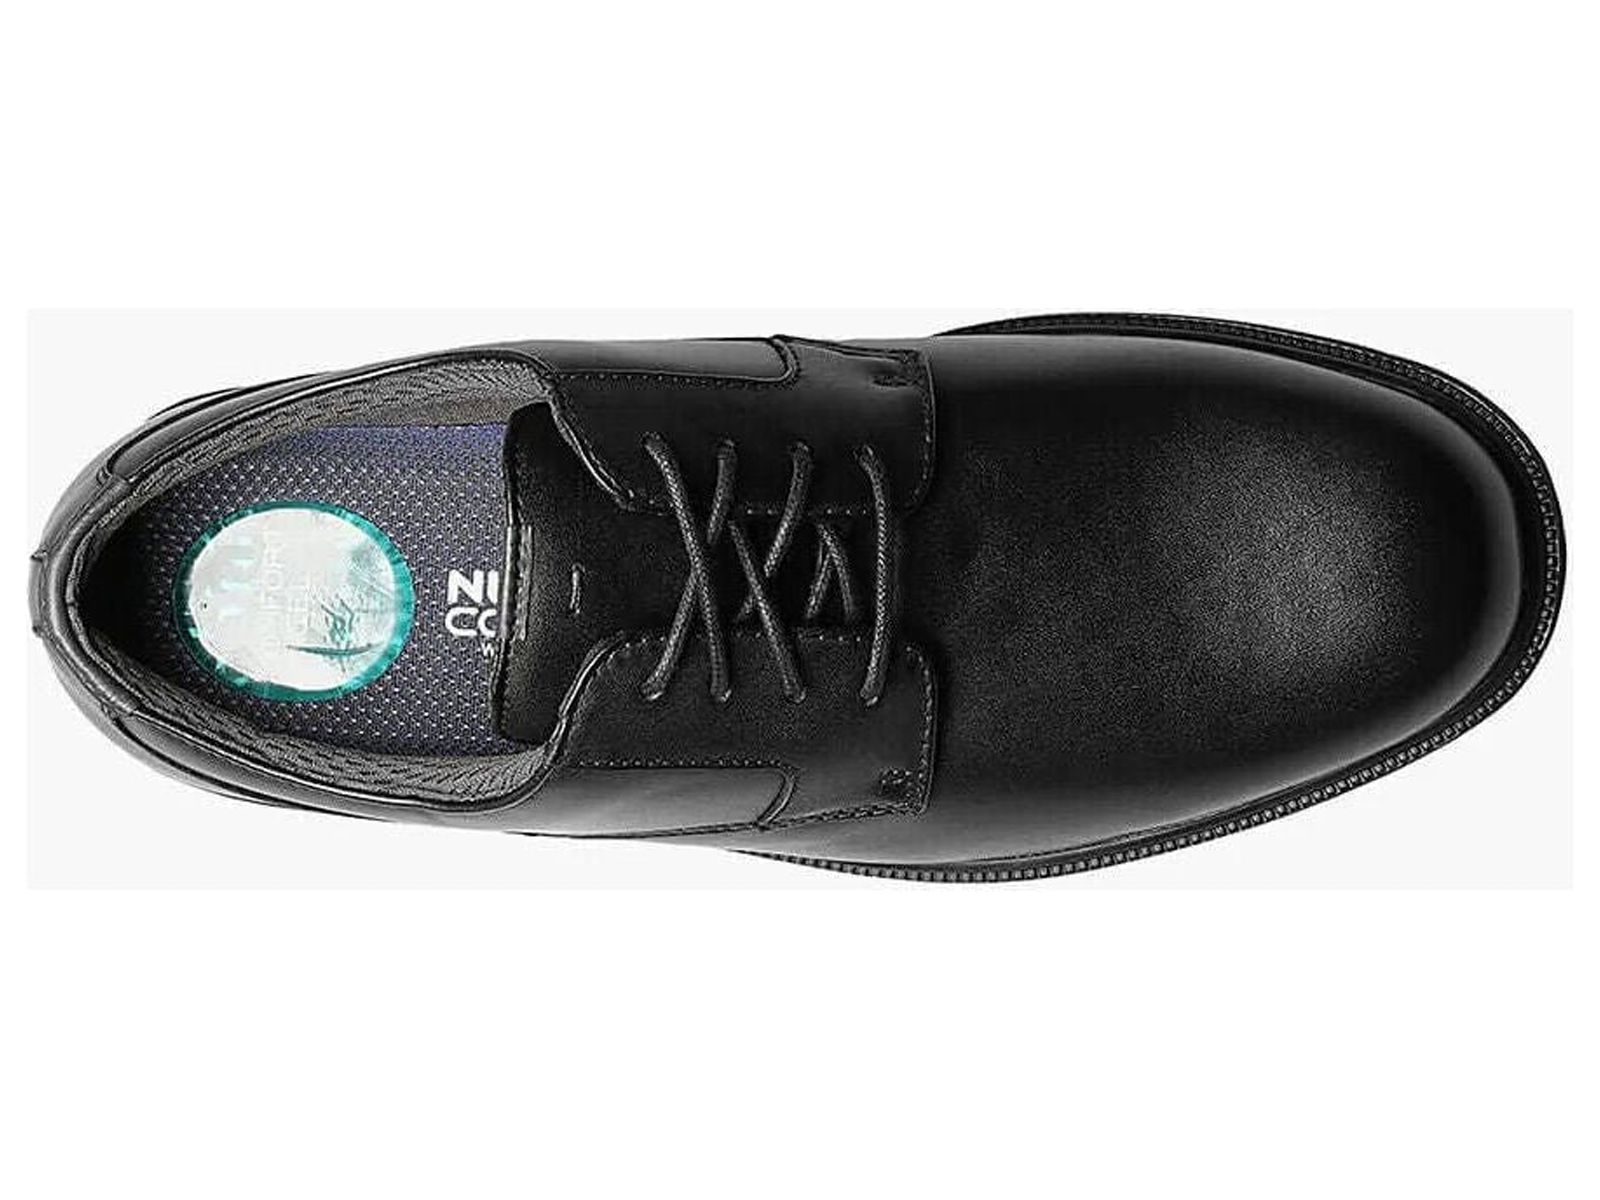 Nunn Bush Marvin Street Plain Toe Oxford Shoes Kore Leather Black 84715-001 - image 5 of 7